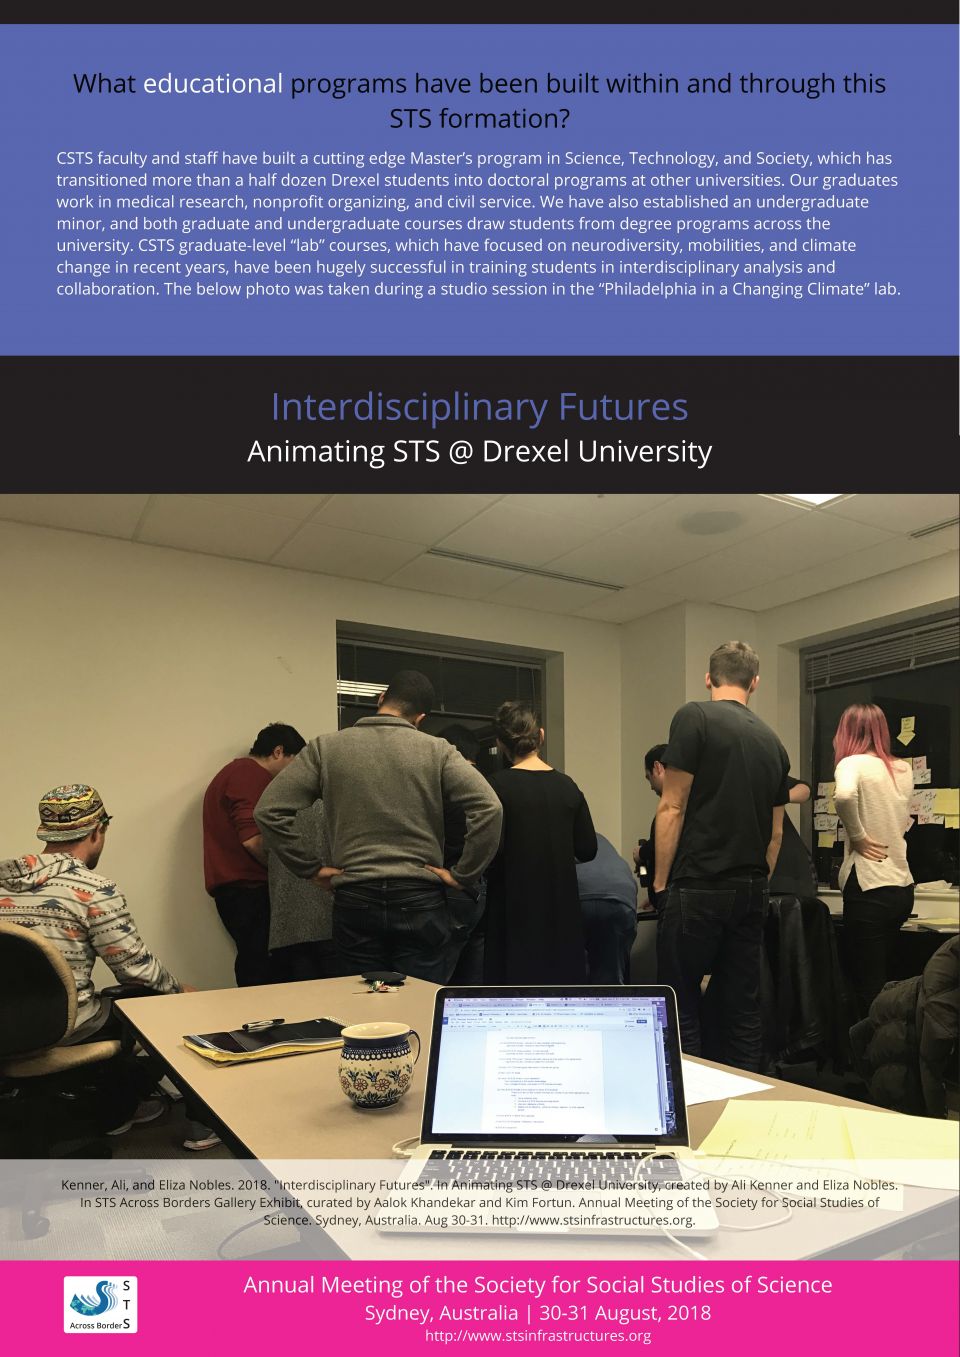 Interdisciplinary Futures